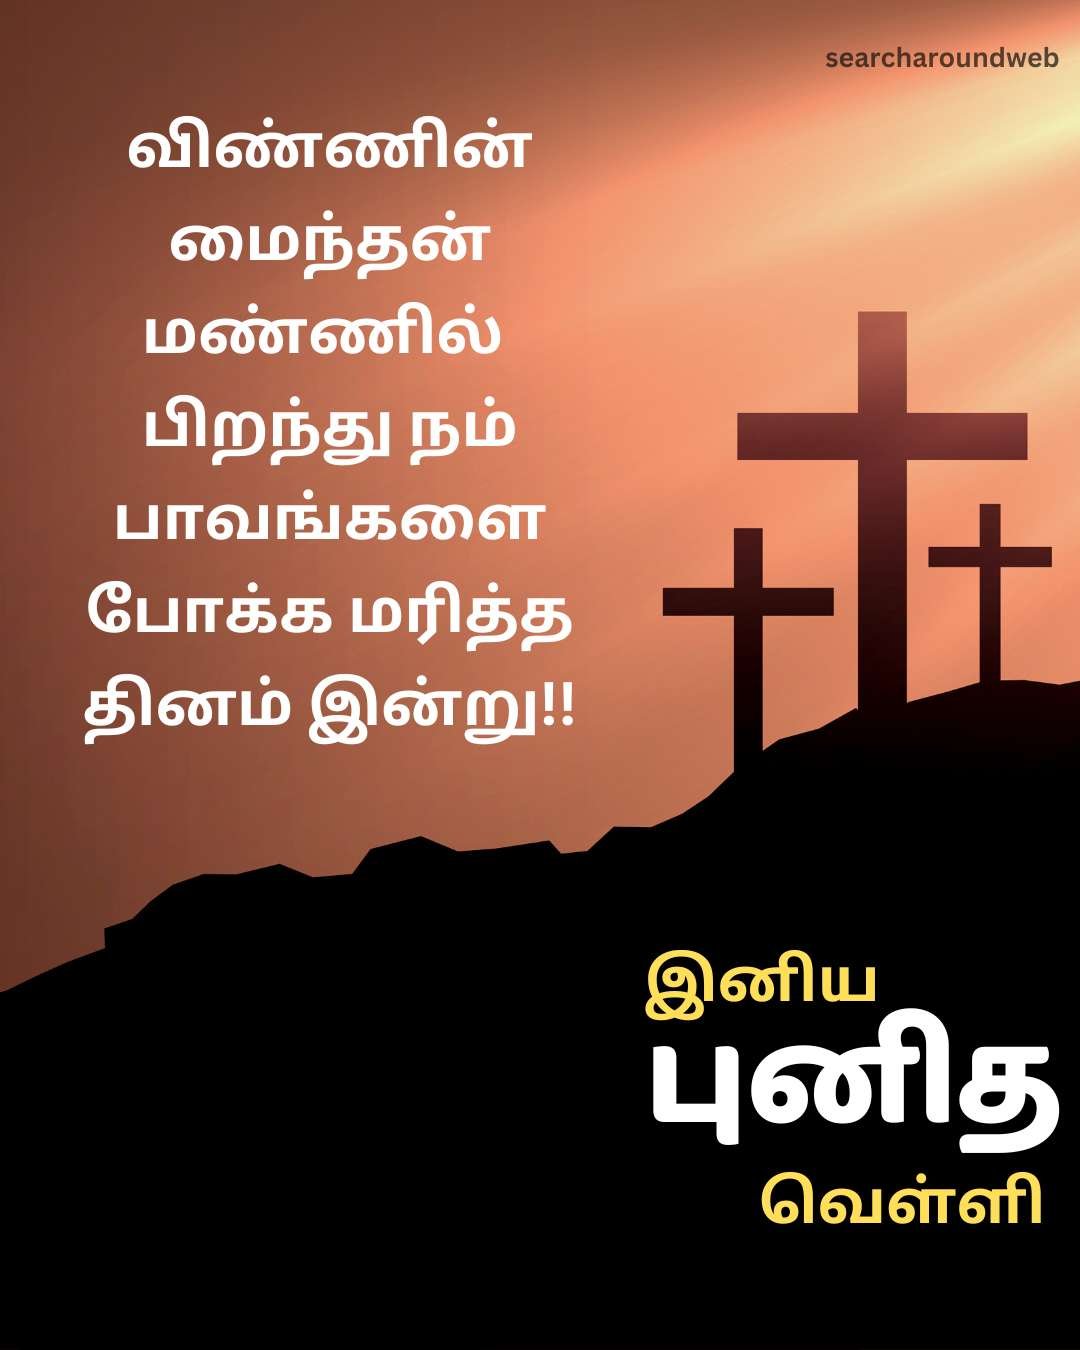 இனிய புனித வெள்ளி வாழ்த்துக்கள் 2023 | Good Friday 2023 Wishes in Tamil